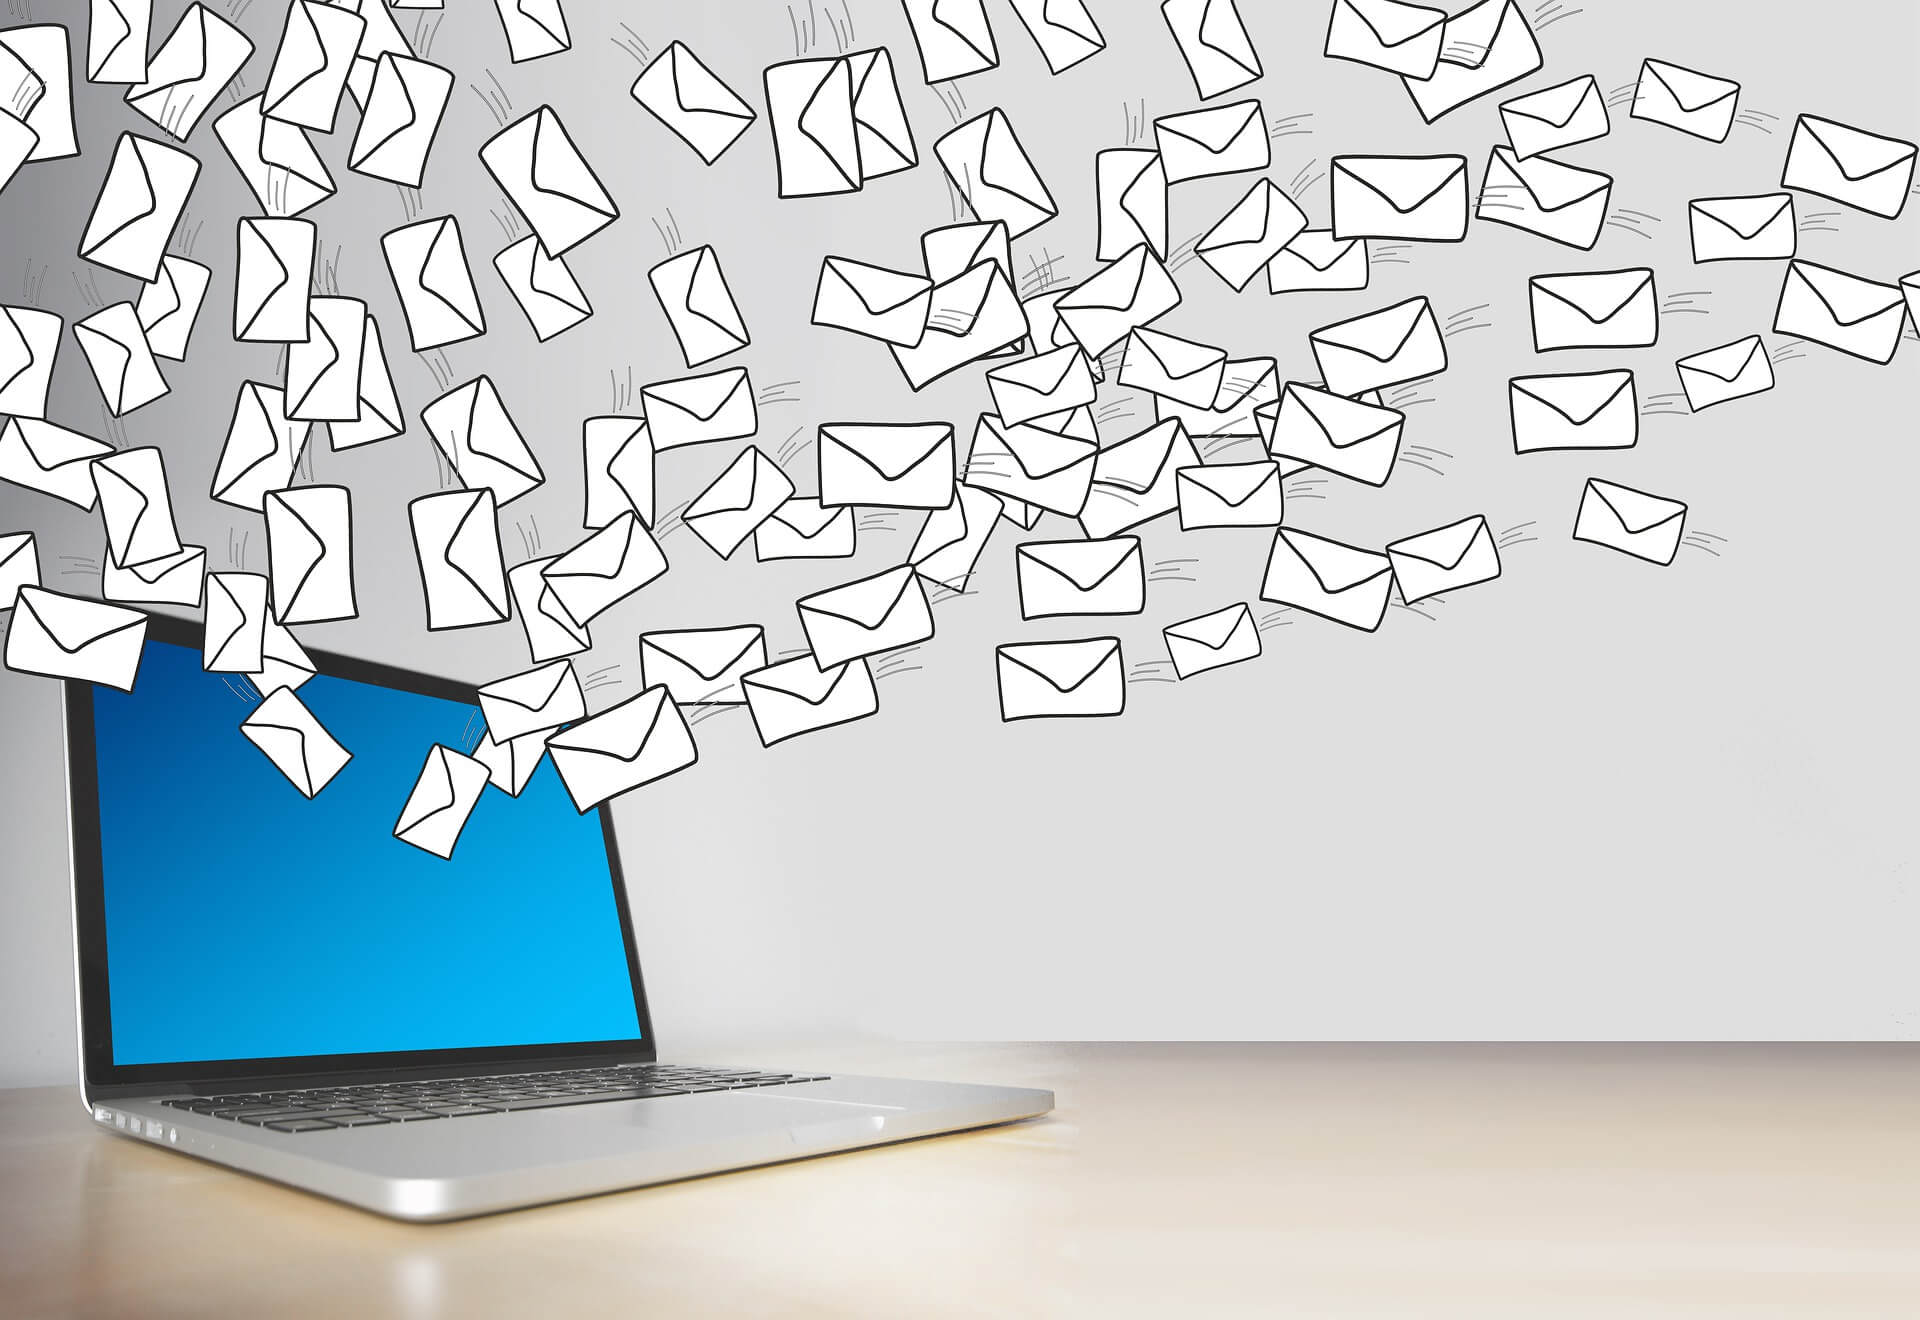 Como Fazer E-mail Marketing e Não SPAM